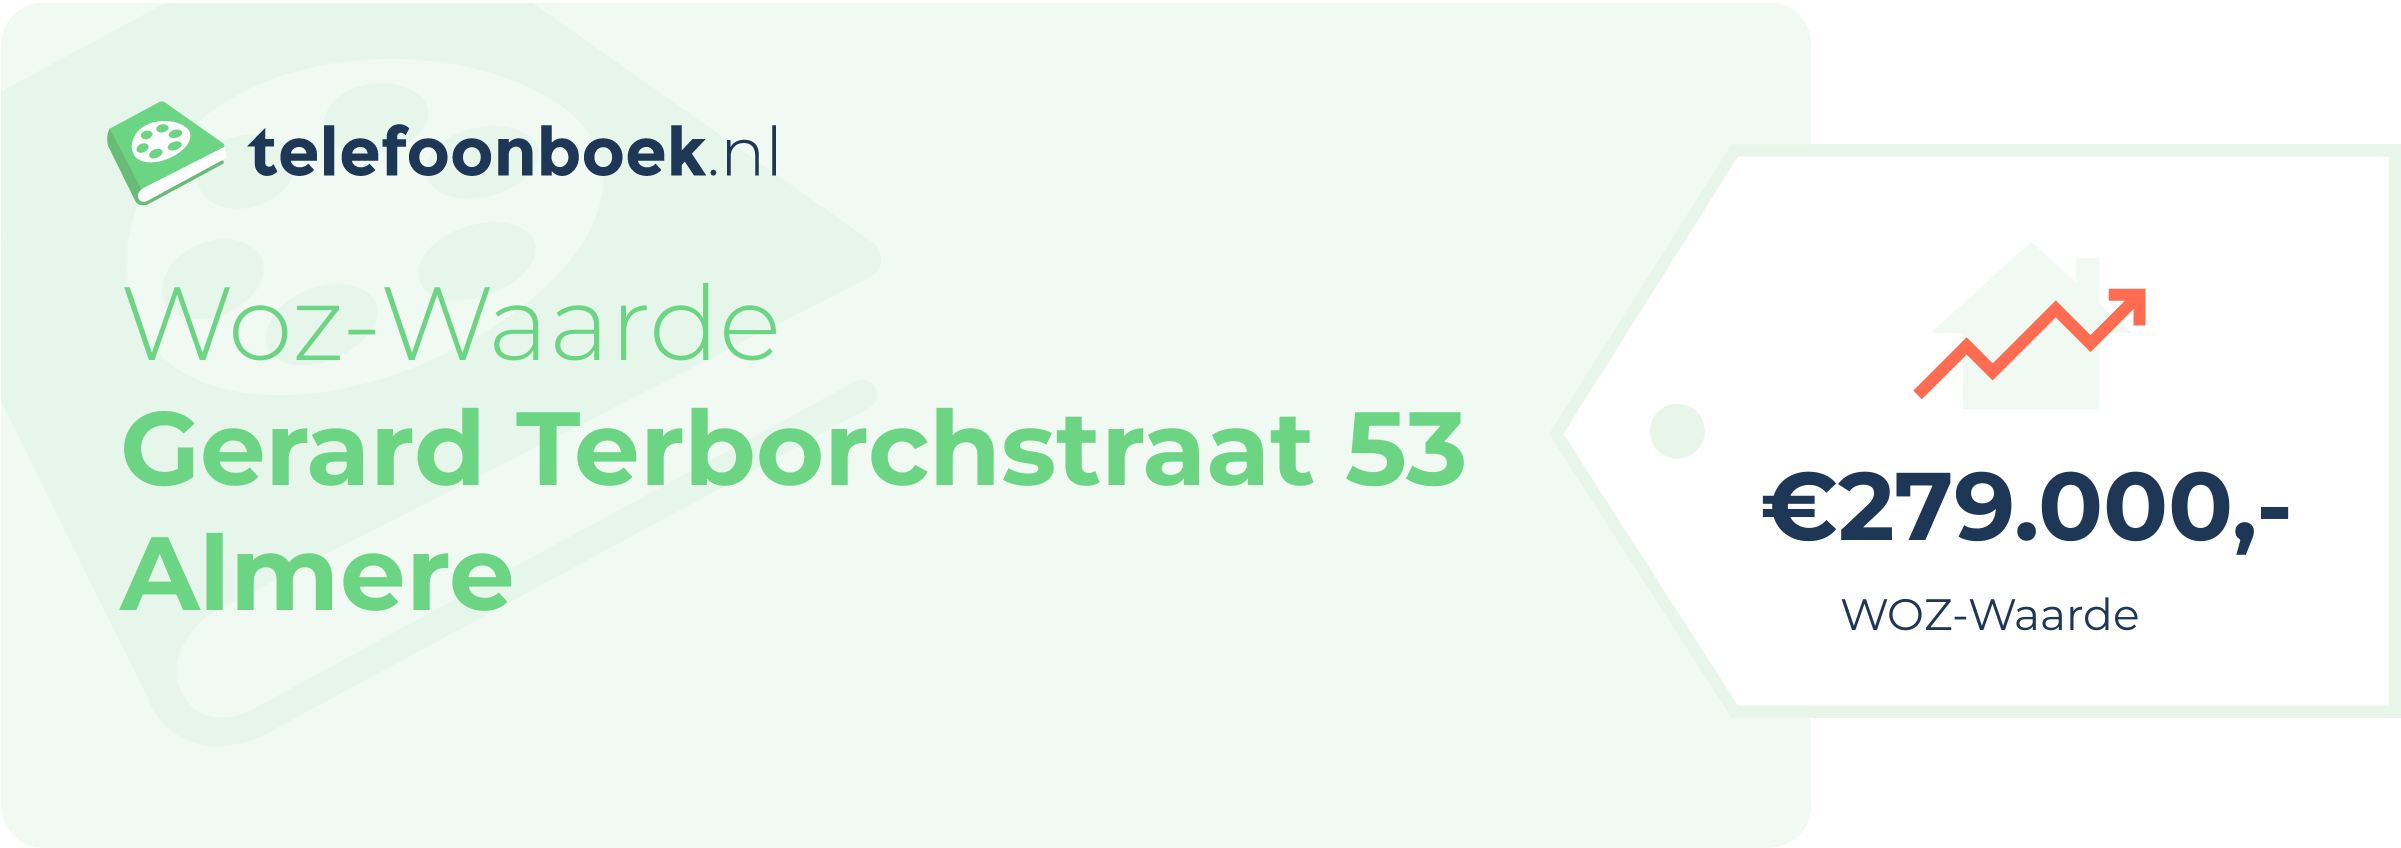 WOZ-waarde Gerard Terborchstraat 53 Almere